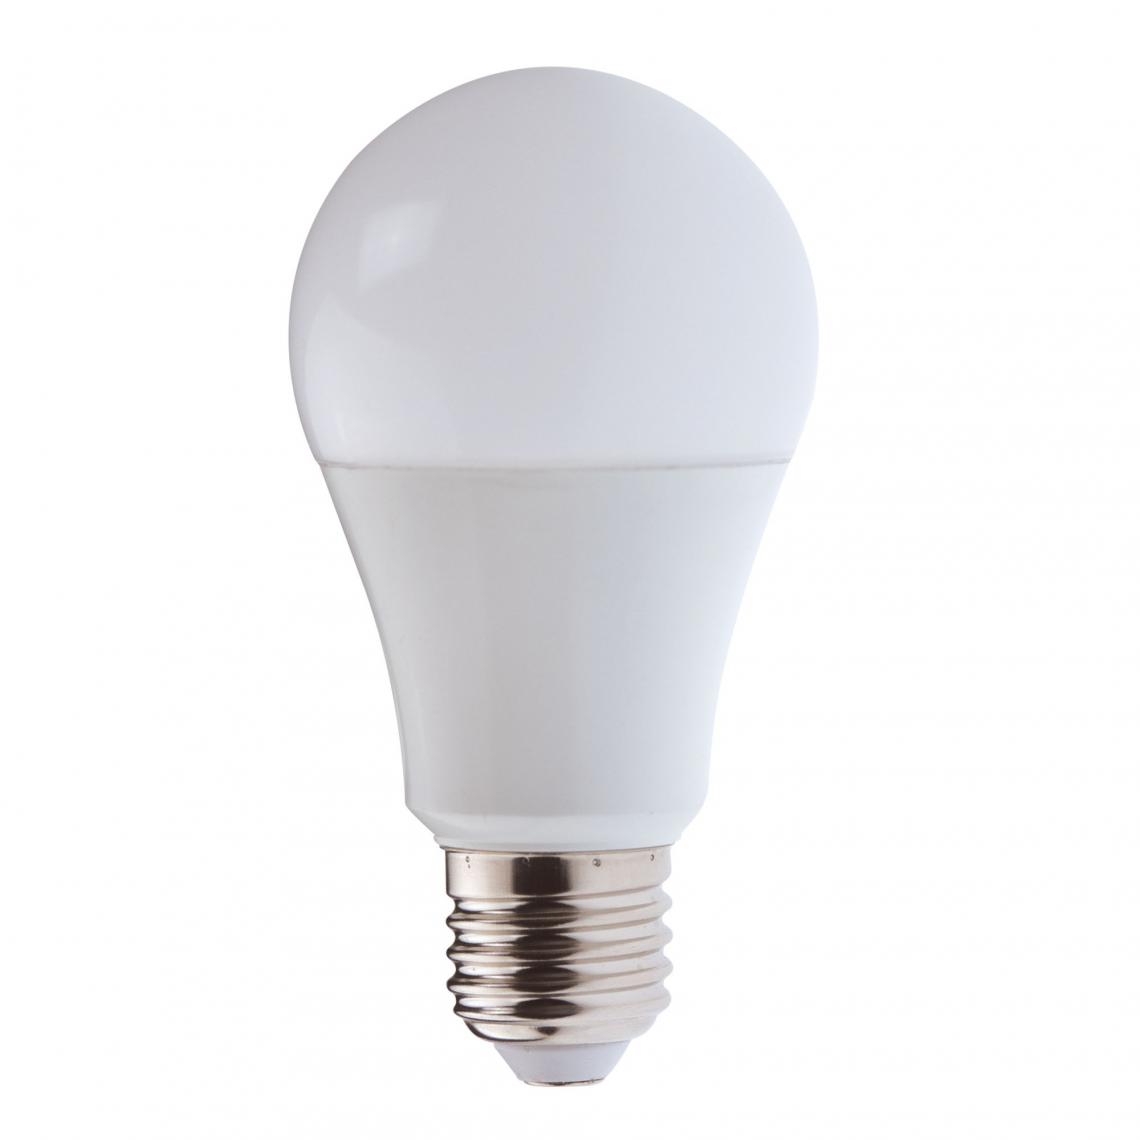 Velamp - Ampoule LED SMD, standard A60, 9W / 806lm, culot E27, 4000K - Ampoules LED